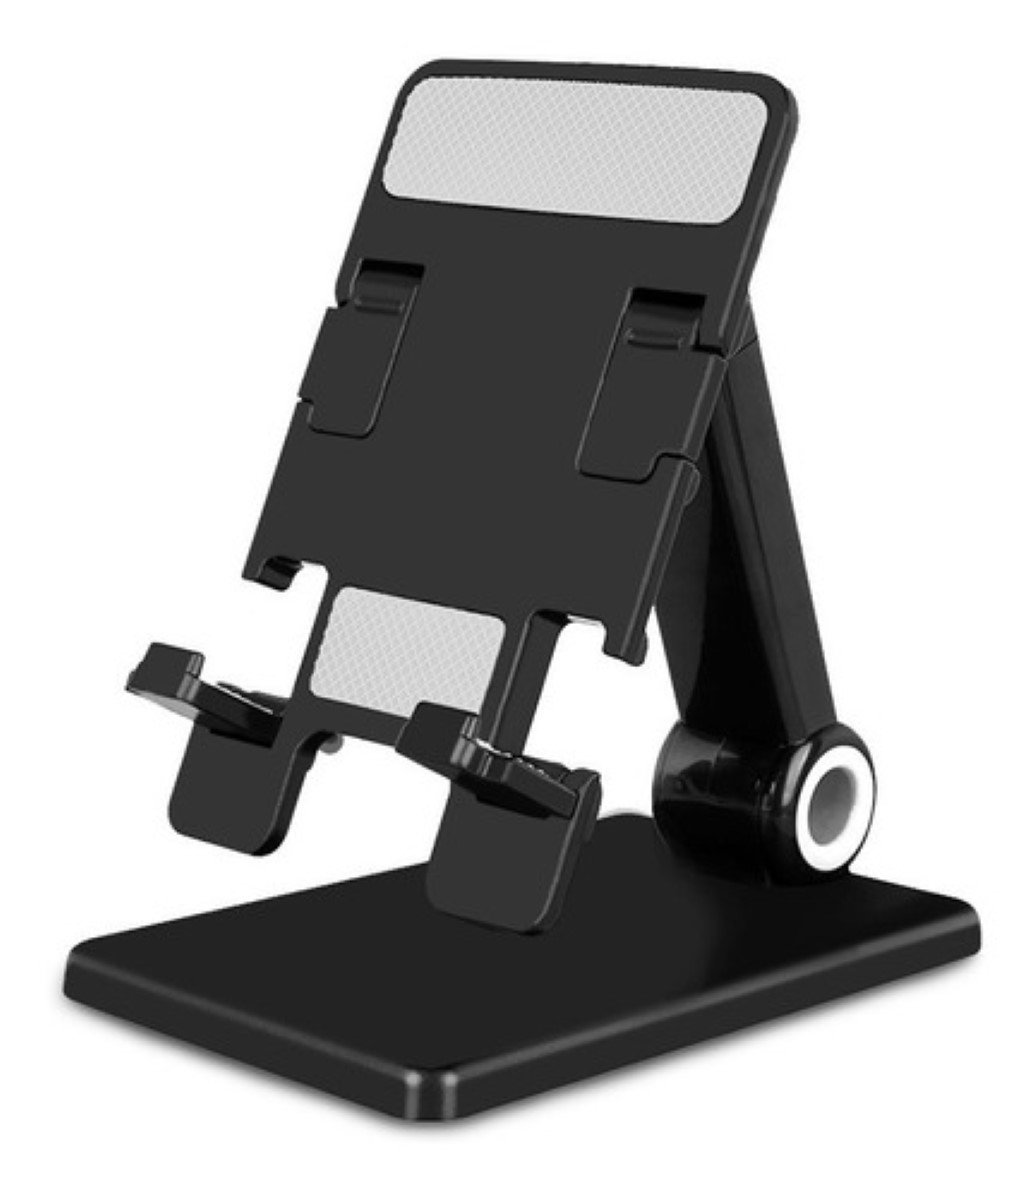 Mini Soporte de Mesa para Smartphone, Altura e Inclinación